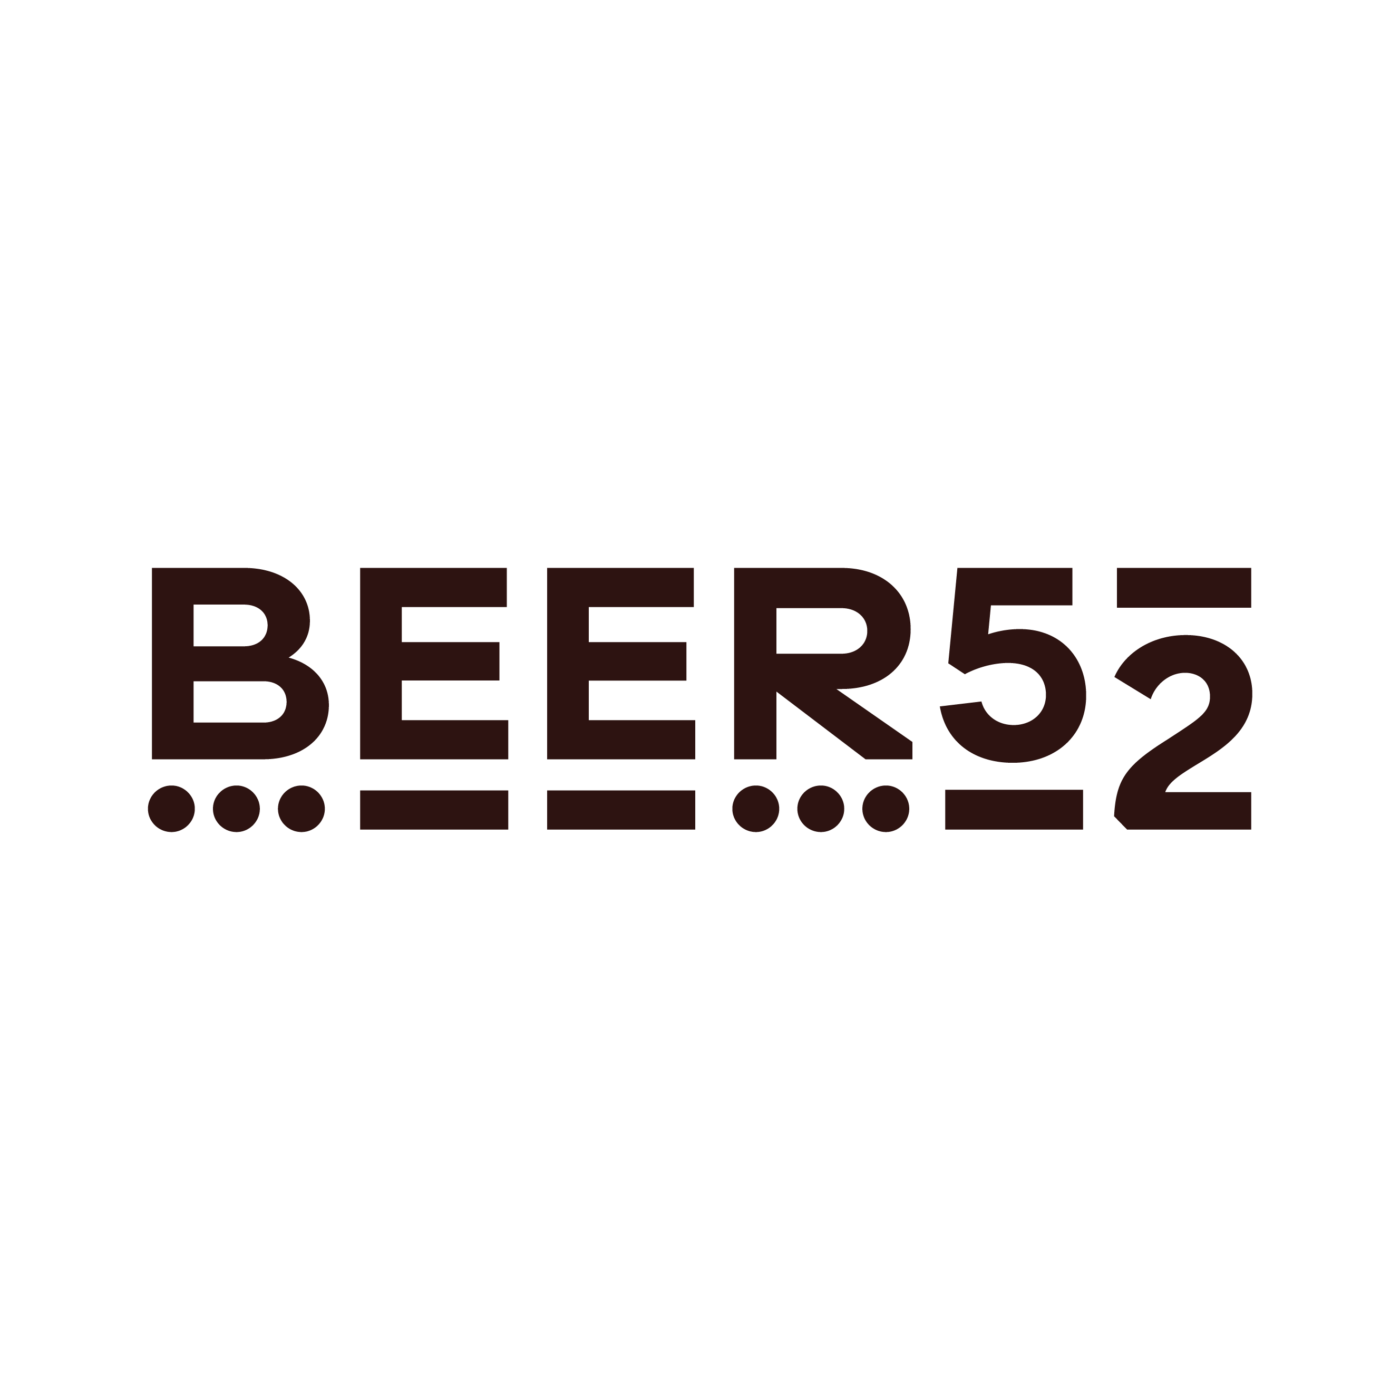 Beer 52